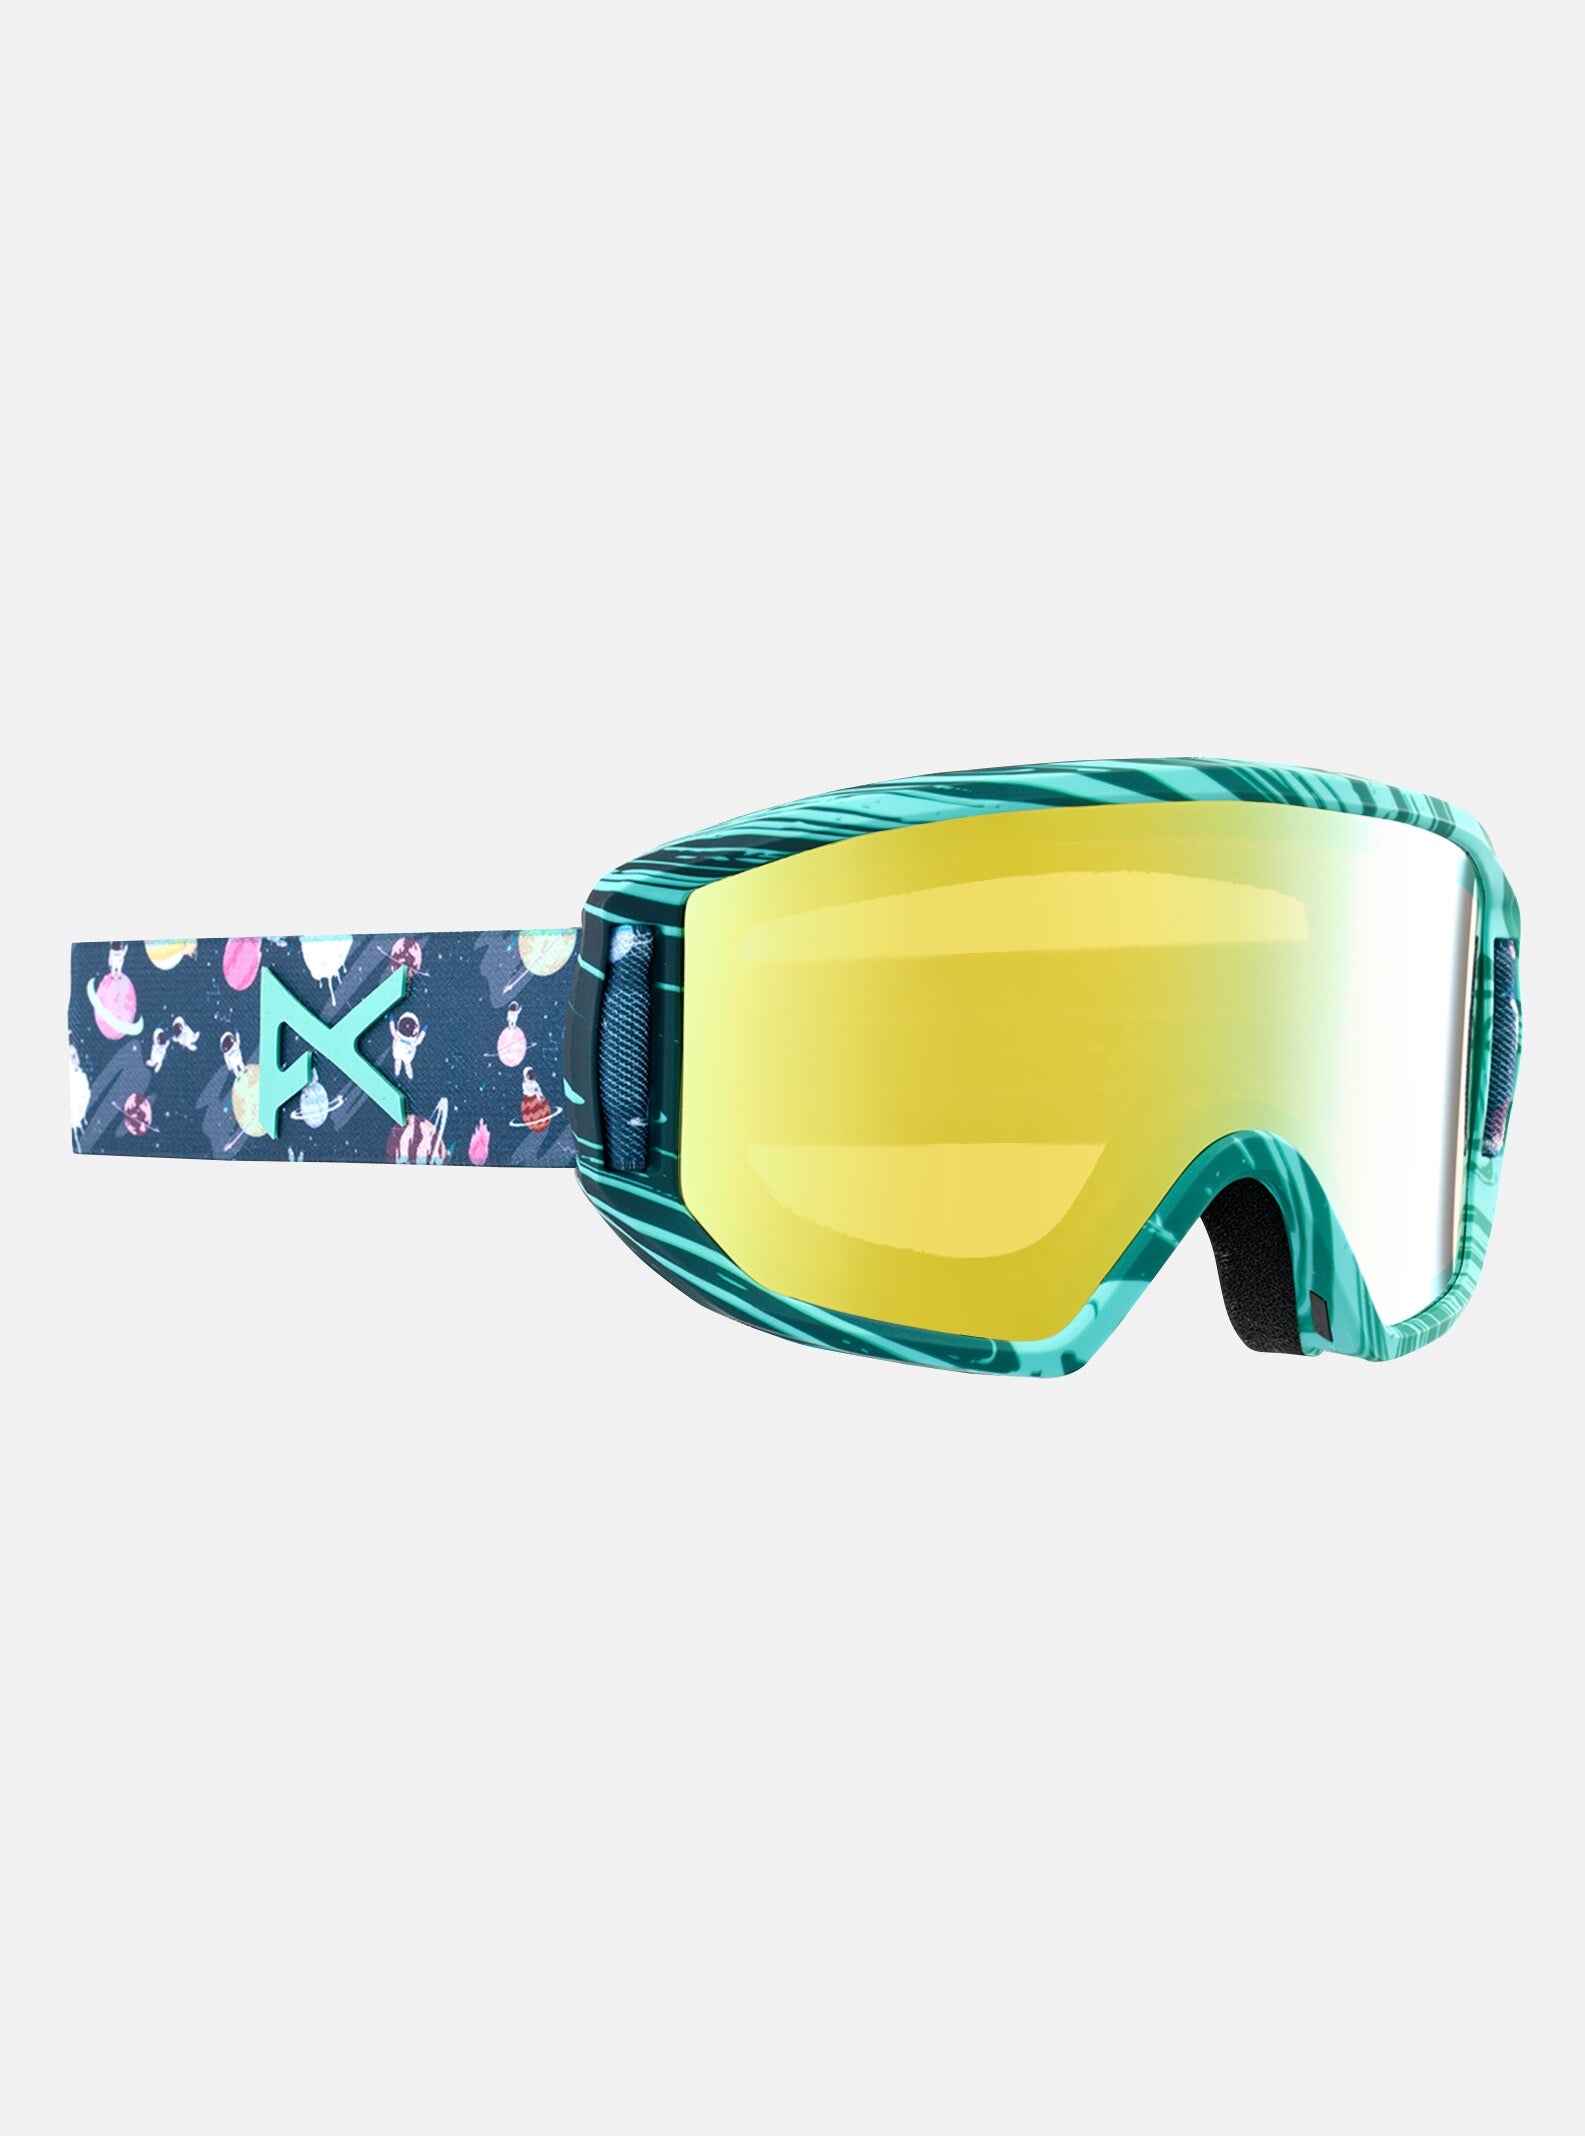 Lunettes de ski/planche à neige pour enfant junior Decibel Carve, lentilles  antibuée et protection anti-UV, noir